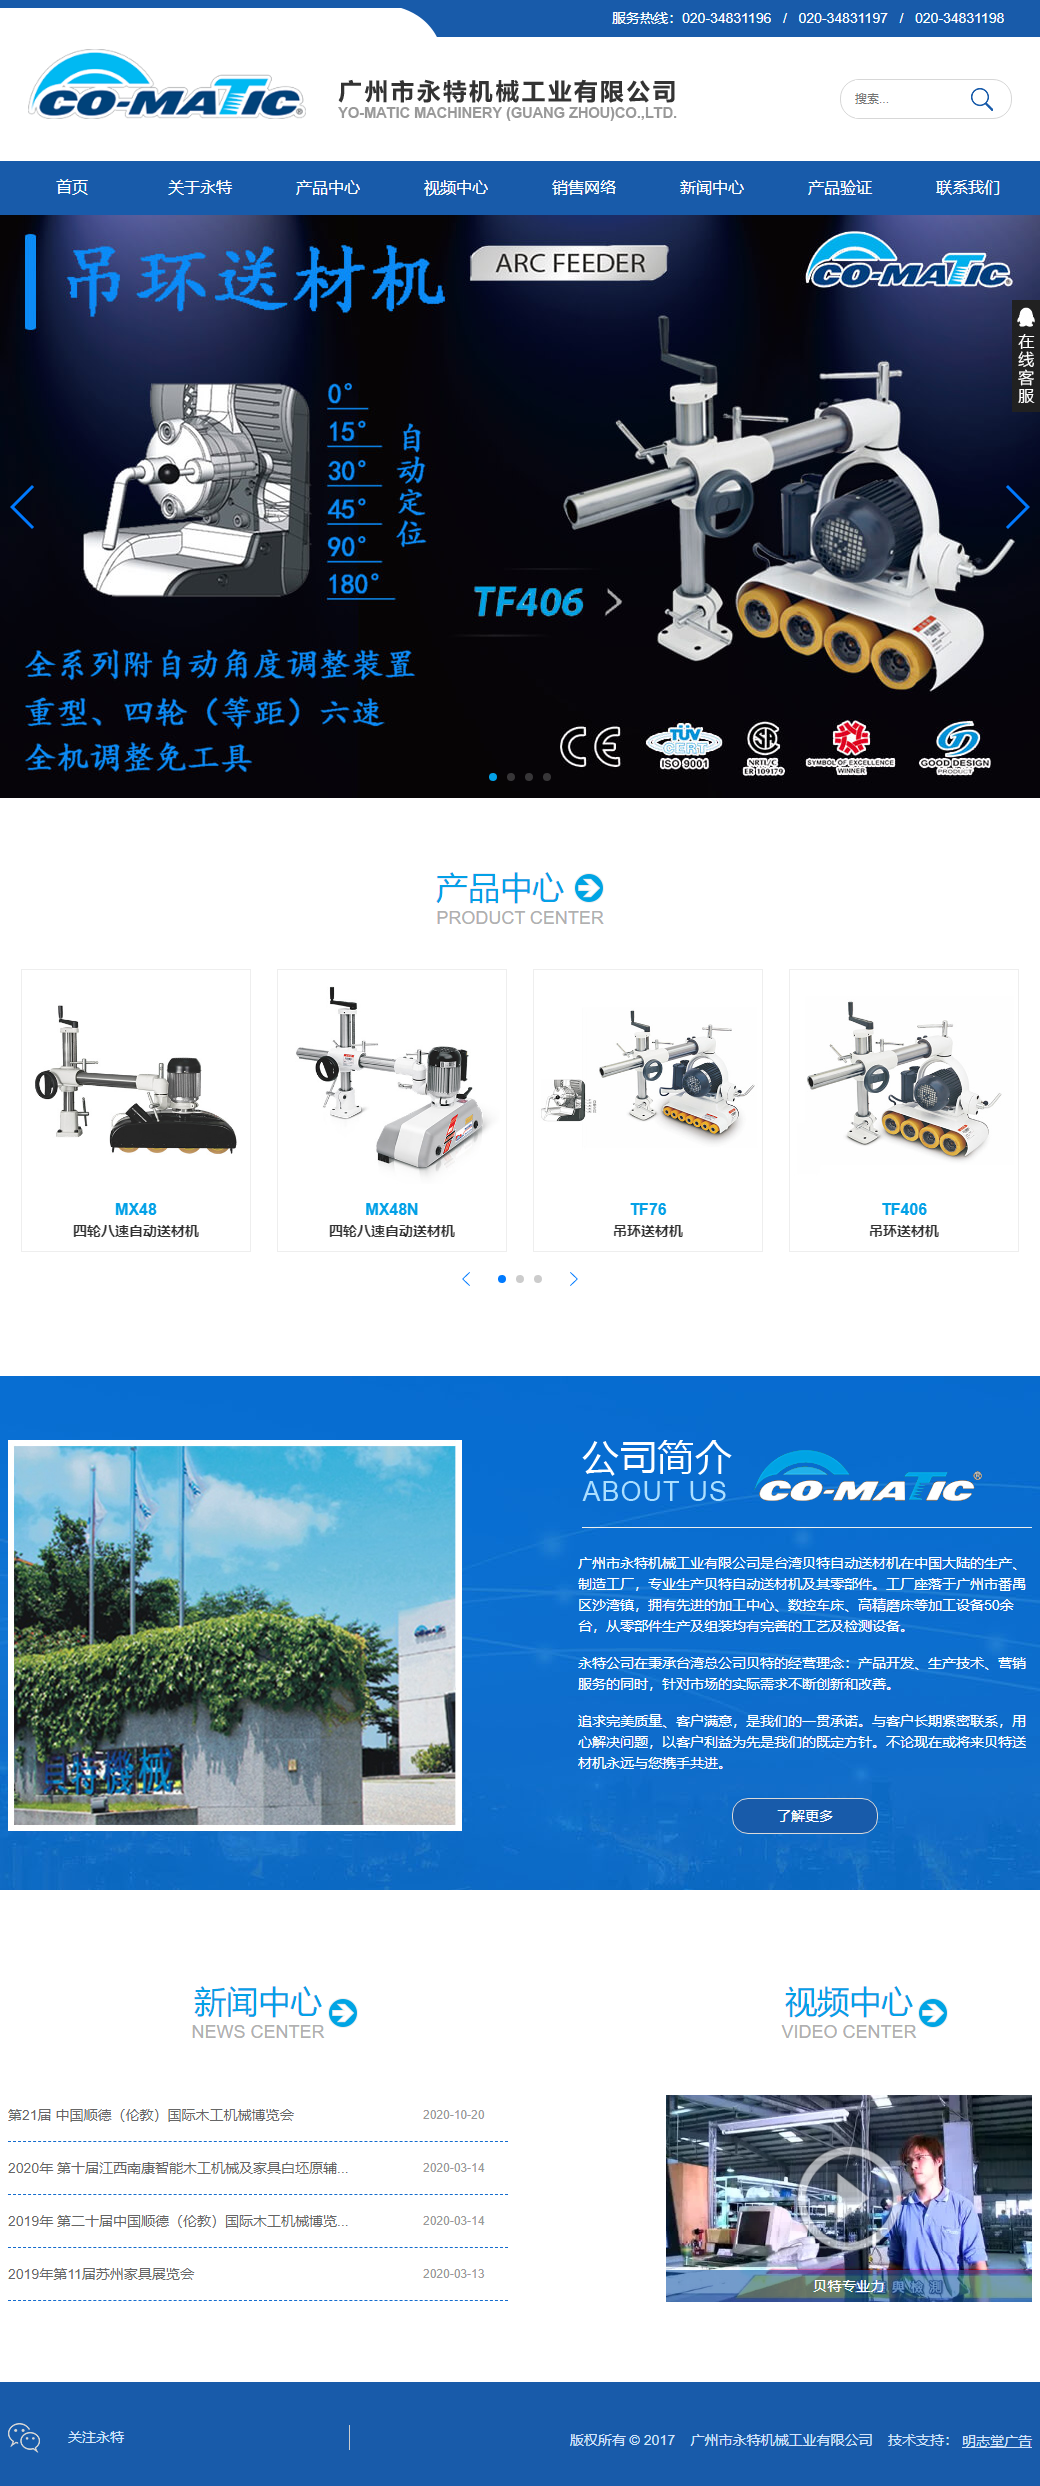 广州市永特机械工业有限公司网站案例